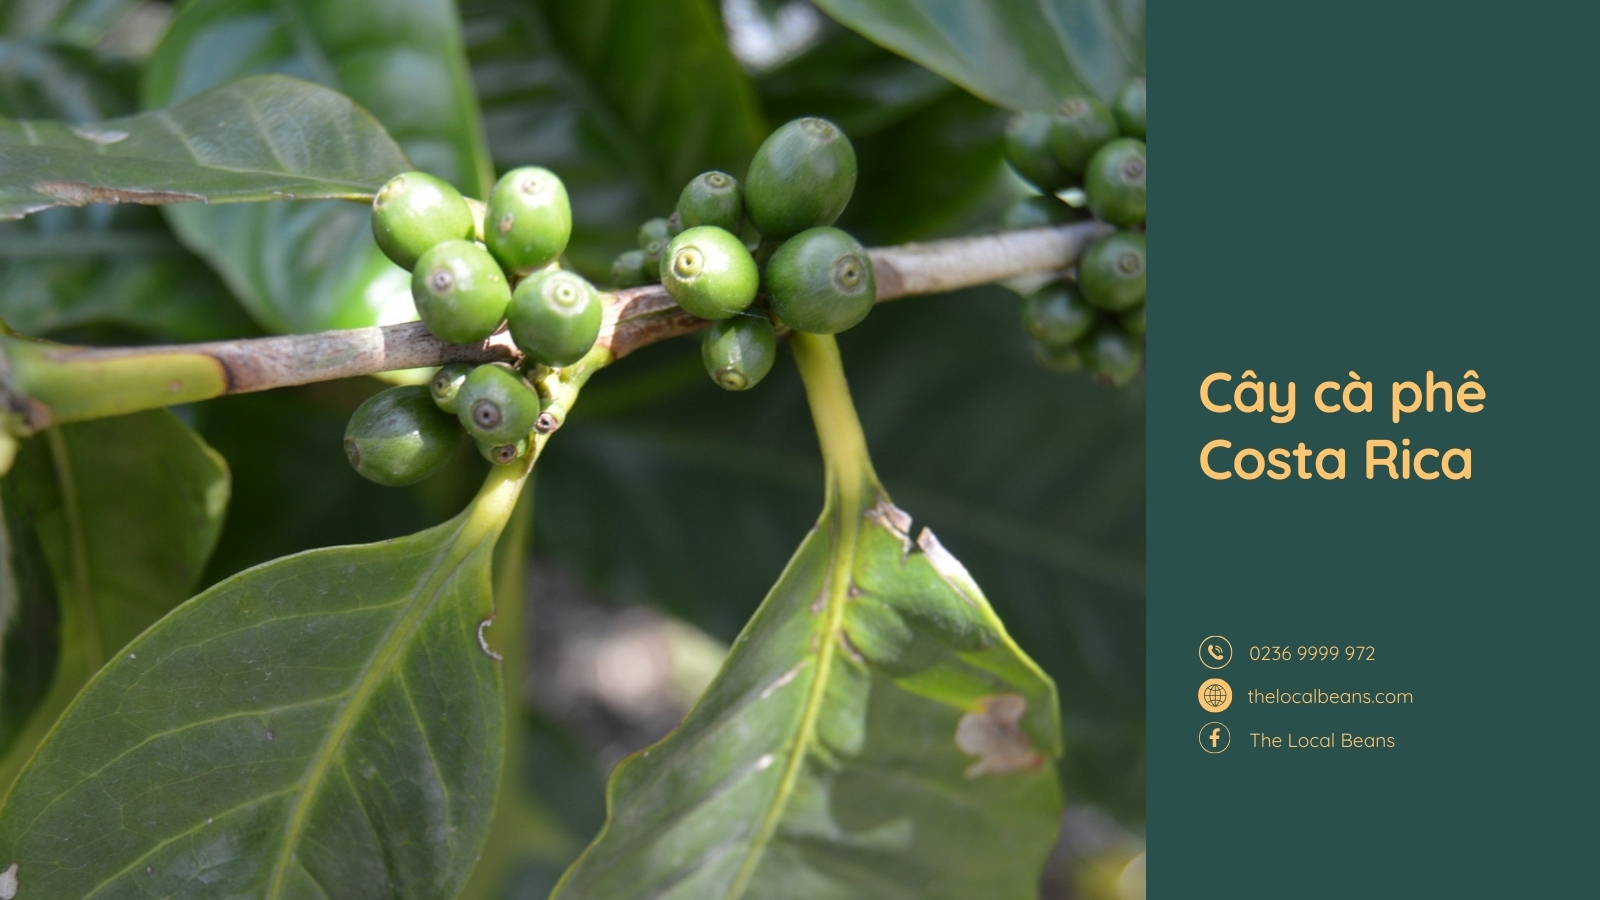 cây cà phê costa rica nơi hạt cafe ngon nhất thế giới hình thành 